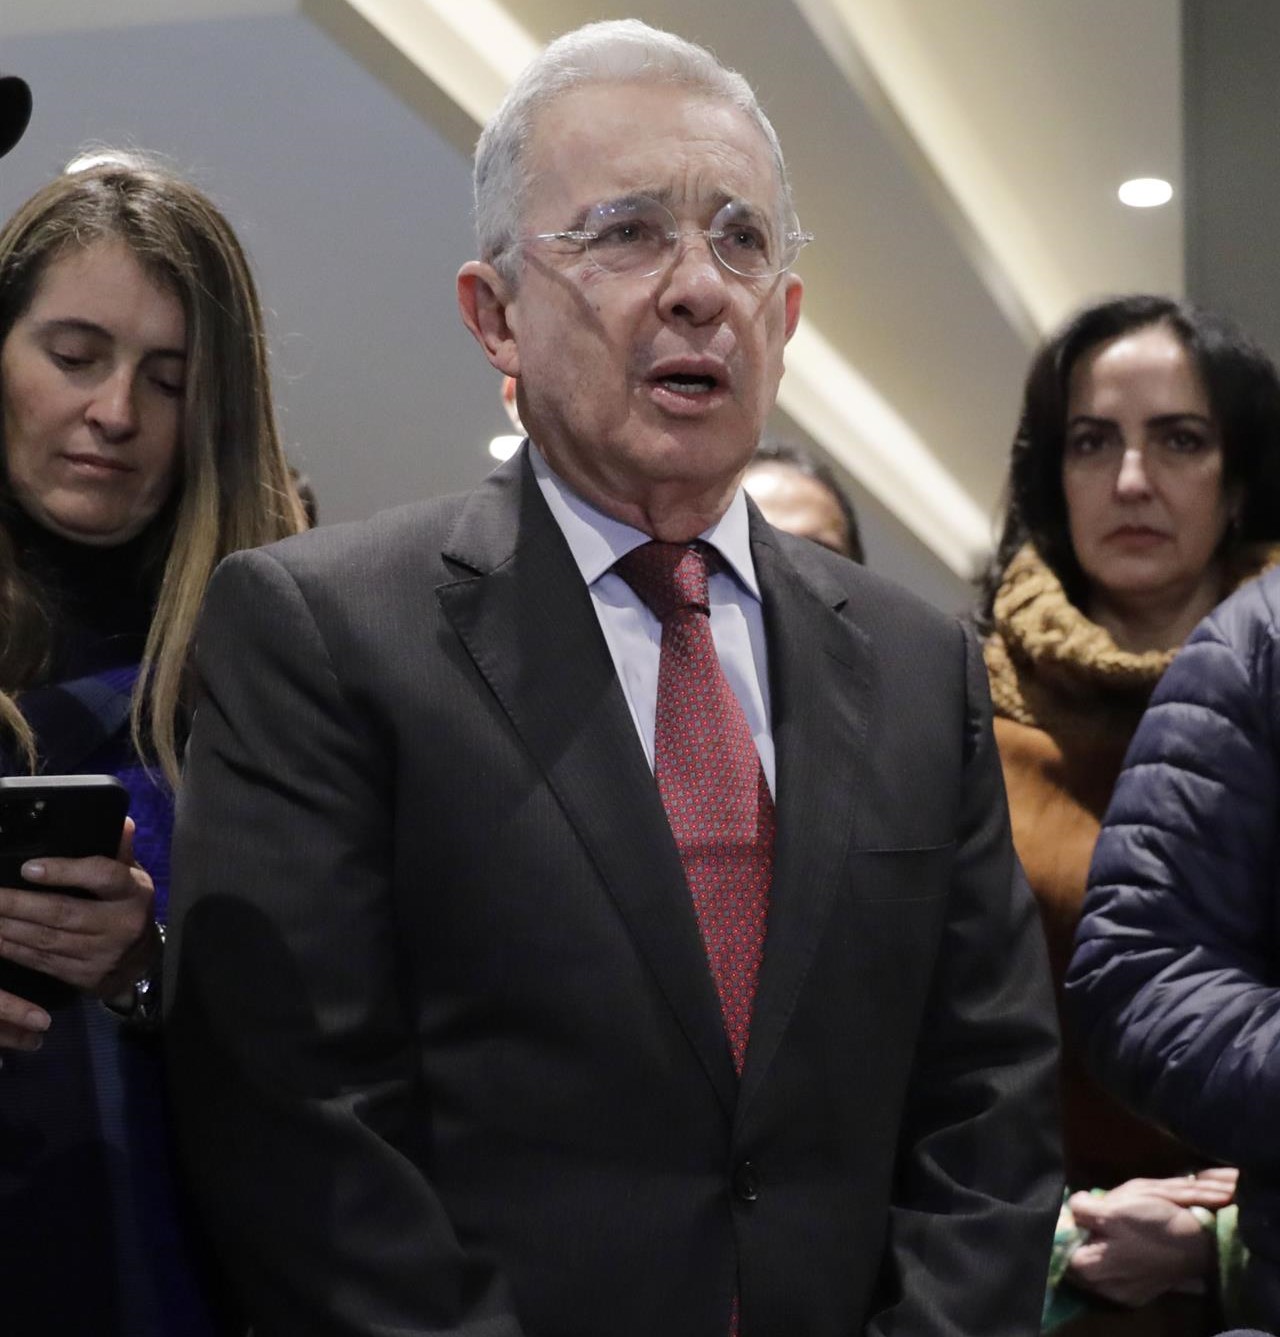 Expresidente Álvaro Uribe no enfrentará preclusión del proceso, según decisión de la jueza